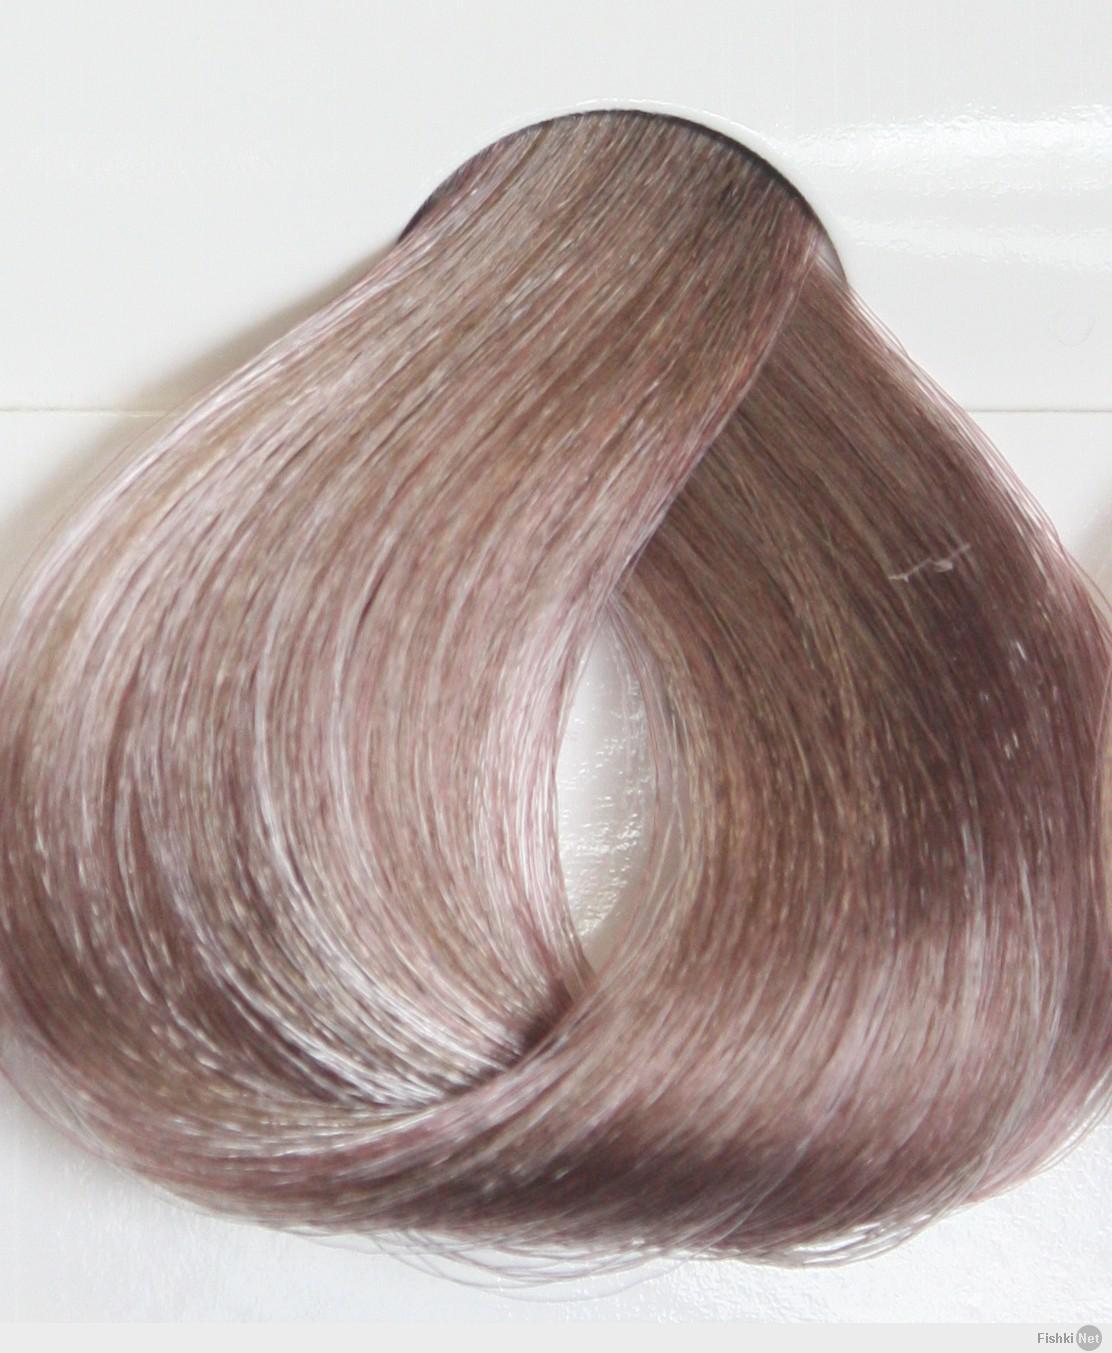 капус 8.23 цвет волос фото